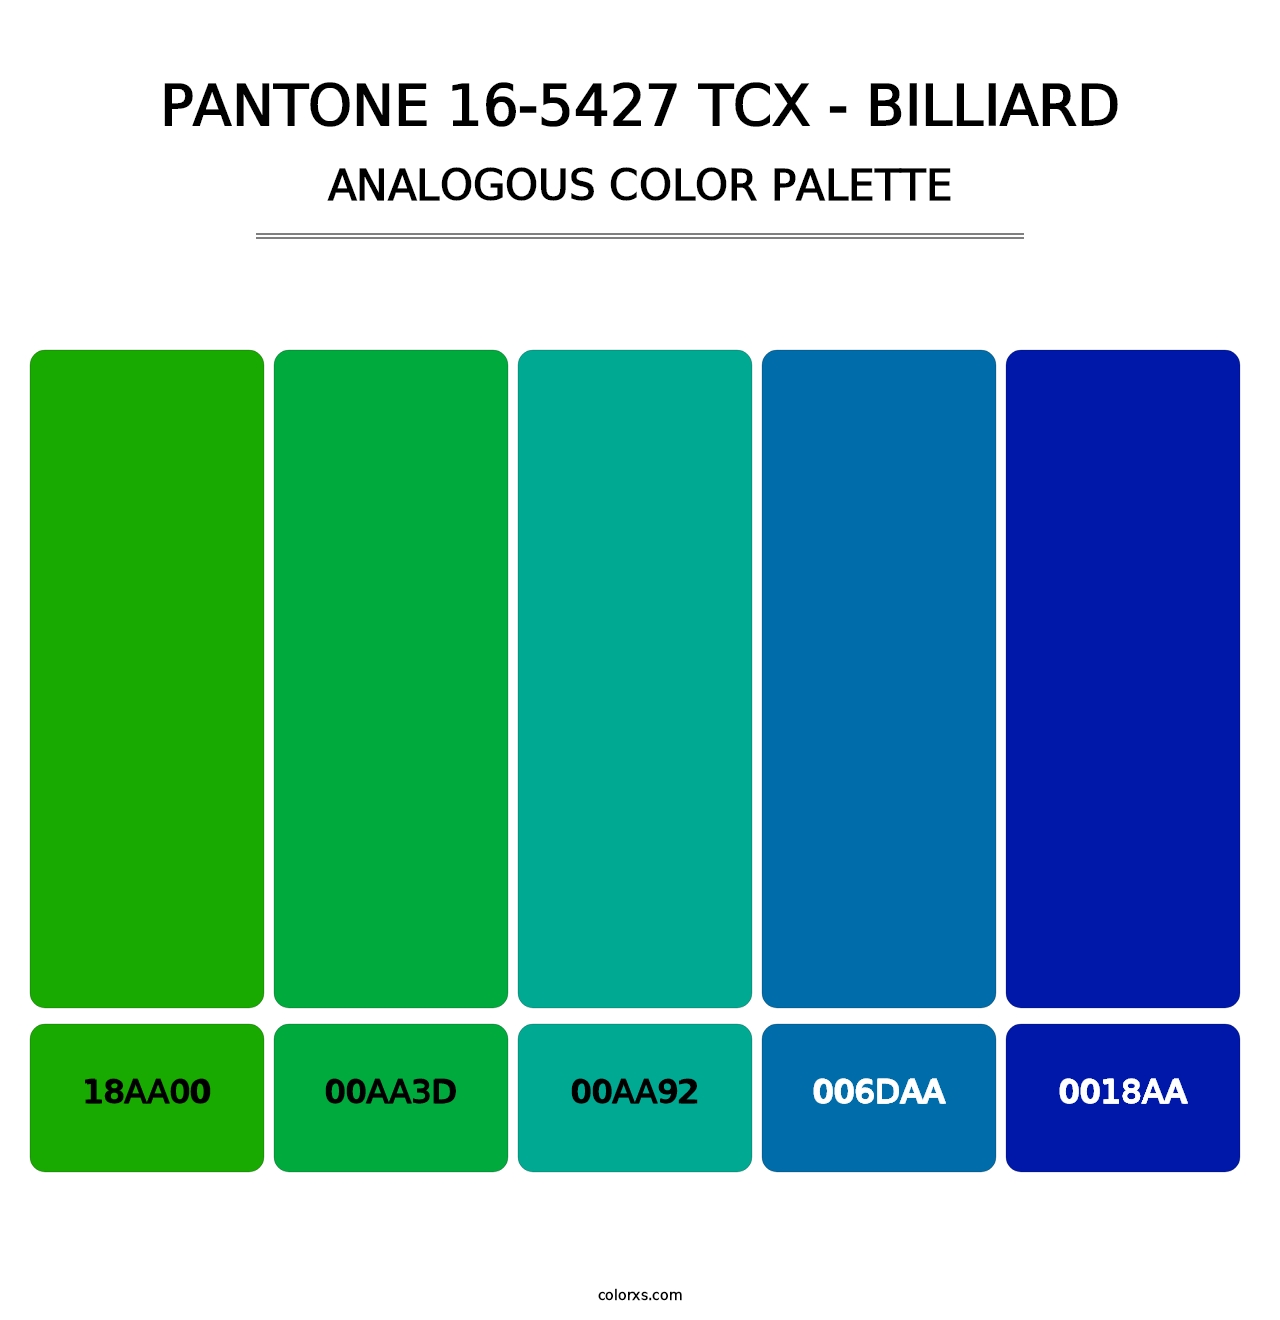 PANTONE 16-5427 TCX - Billiard - Analogous Color Palette